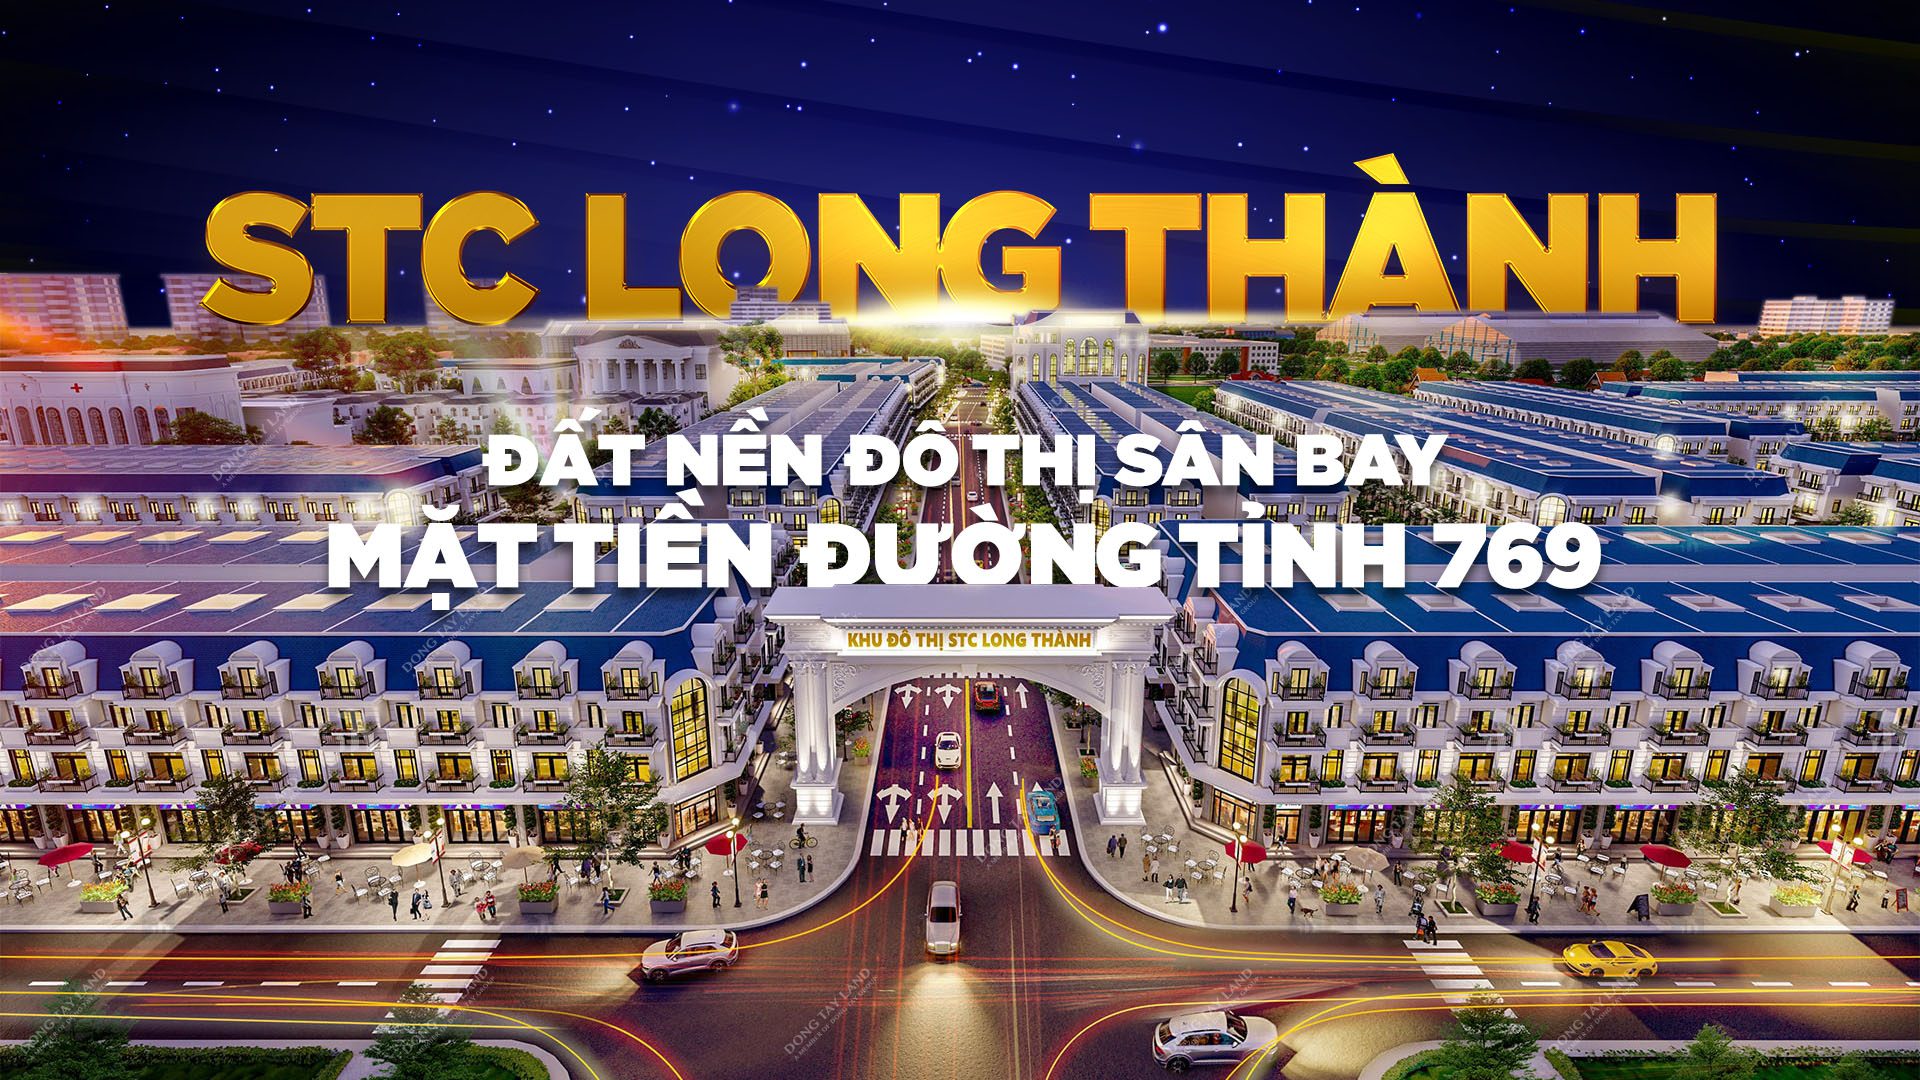 STC Long Thành - Đô thị sân bay mặt tiền đường tỉnh 769